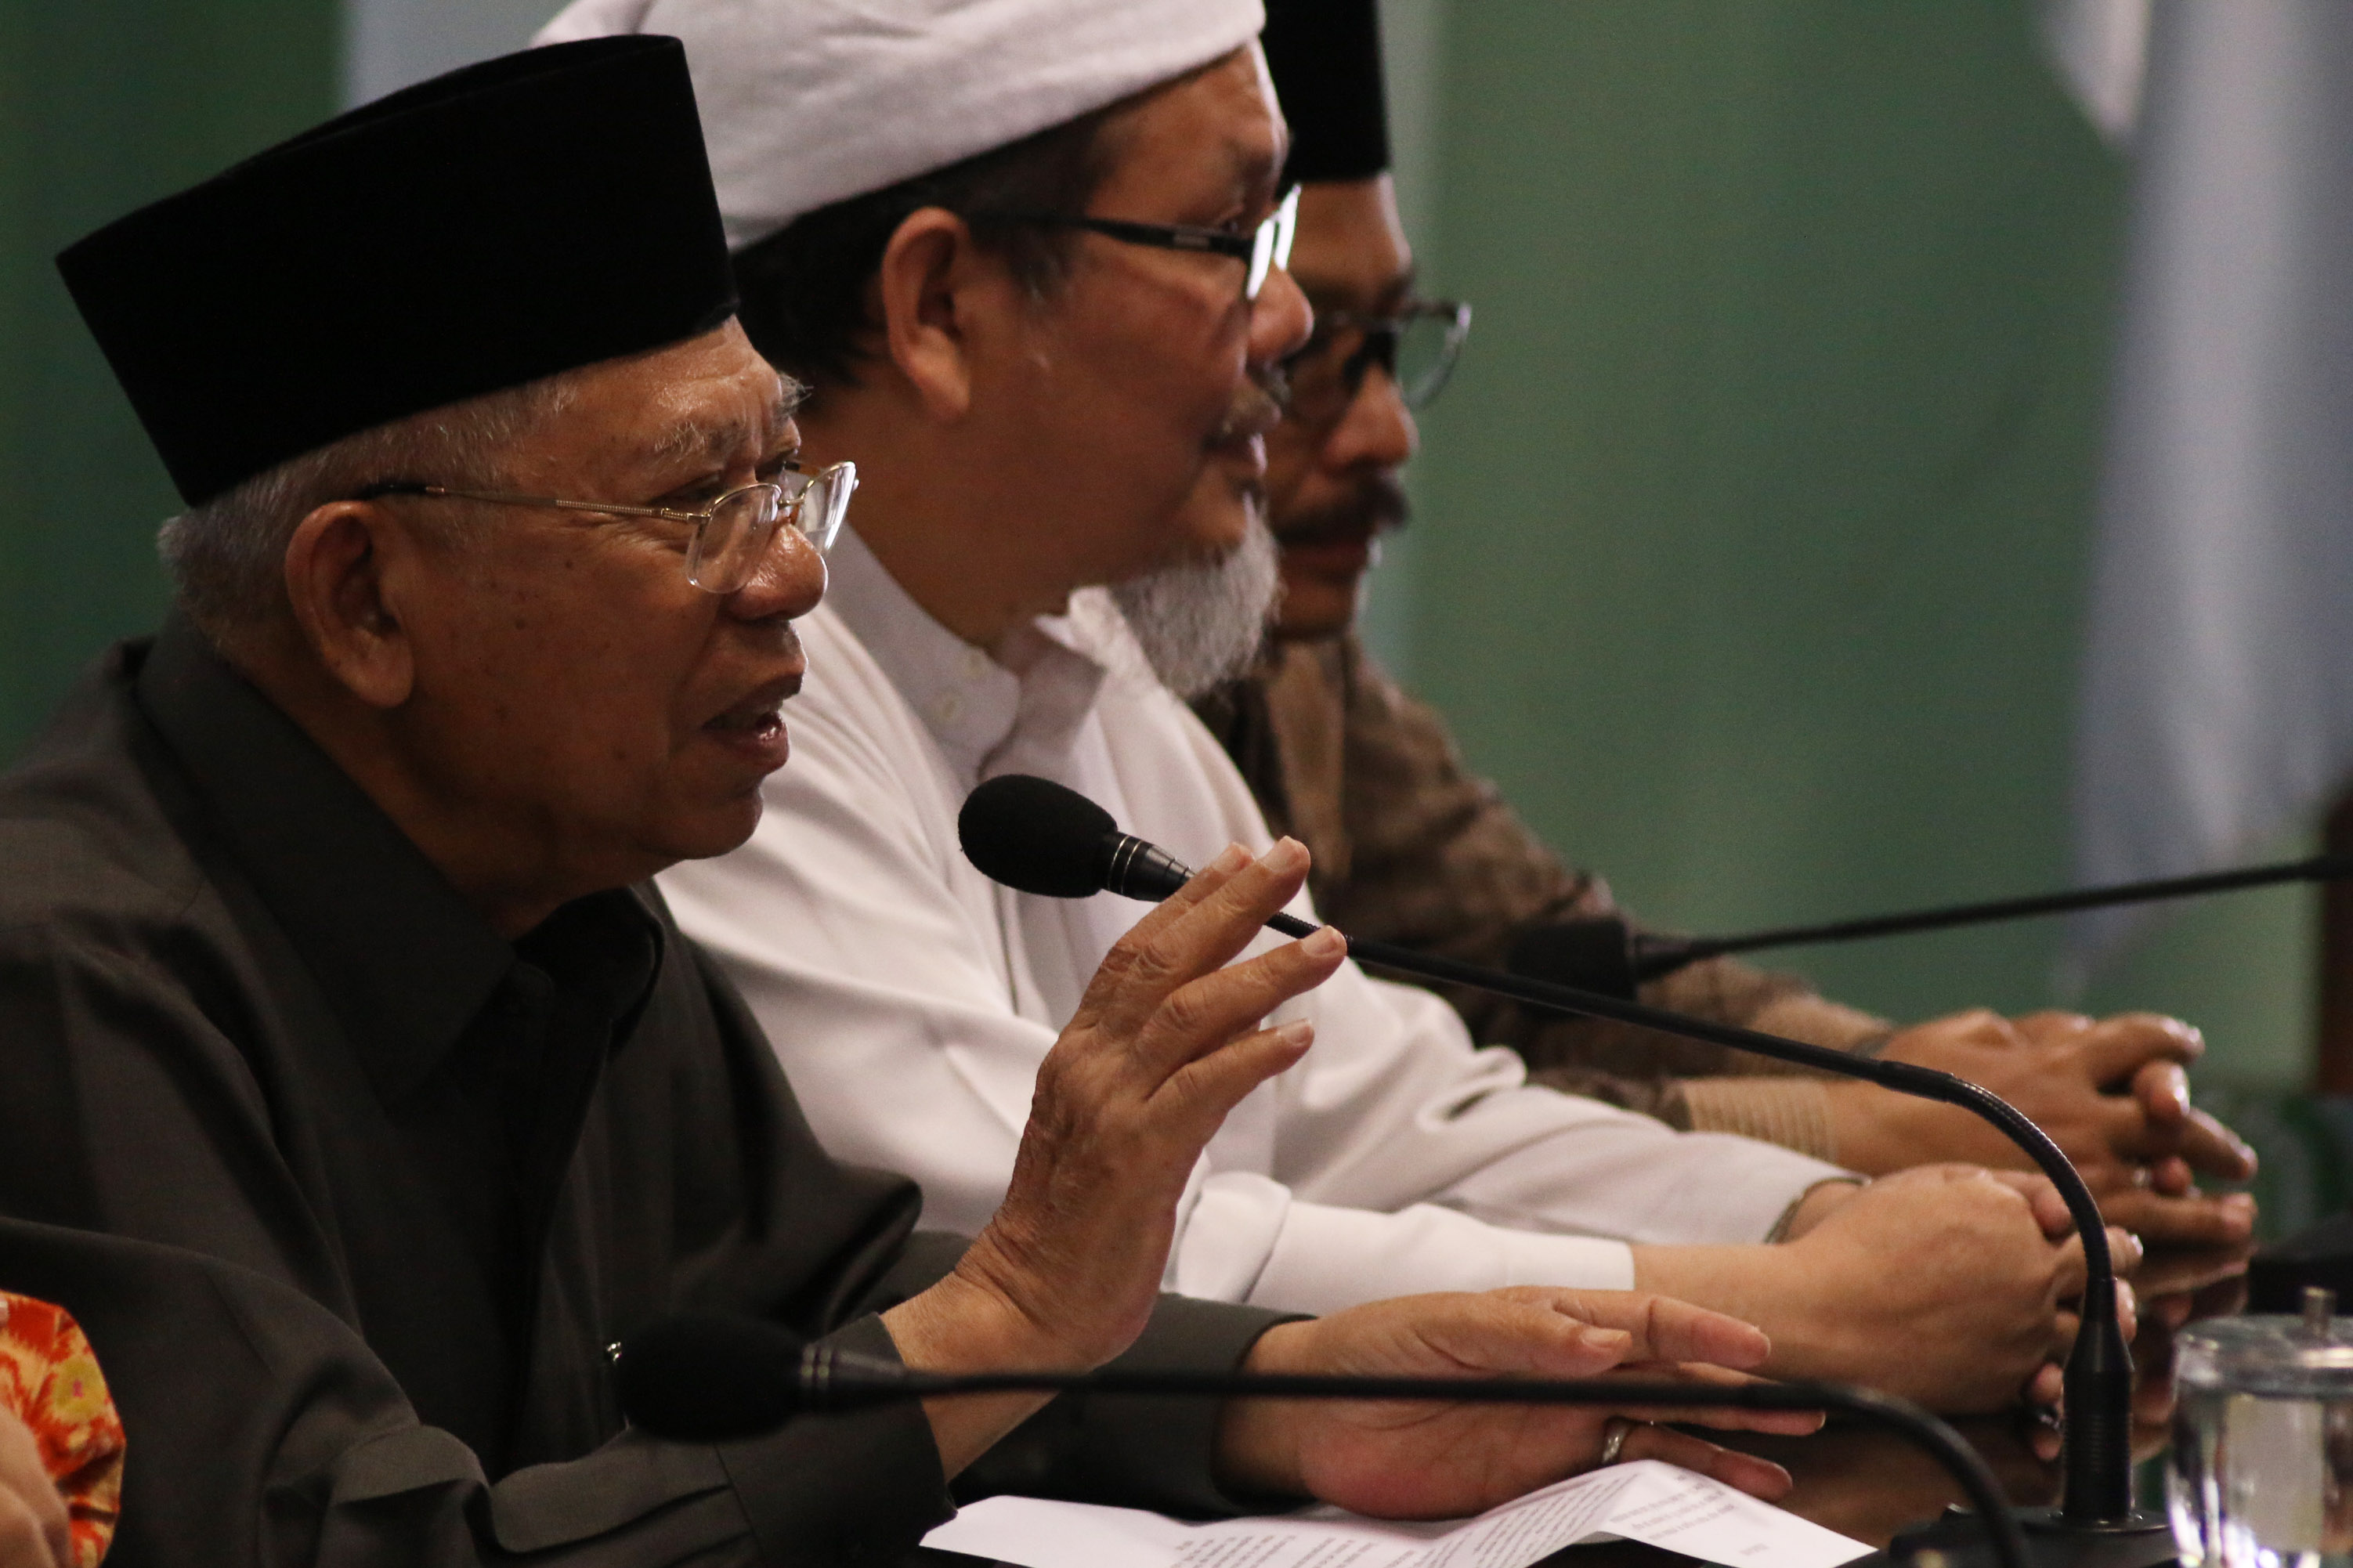 Ketua Umum Majelis Ulama Indonesia (MUI) Pusat, Maruf Amin (kiri) bersama Wakil Sekretaris Jenderal MUI Tengku Zulkarnain (tengah), dan Bendahara MUI Iing Solihin (kanan) memberikan keterangan pers kepada wartawan terkait penistaan agama yang dilakukan ole